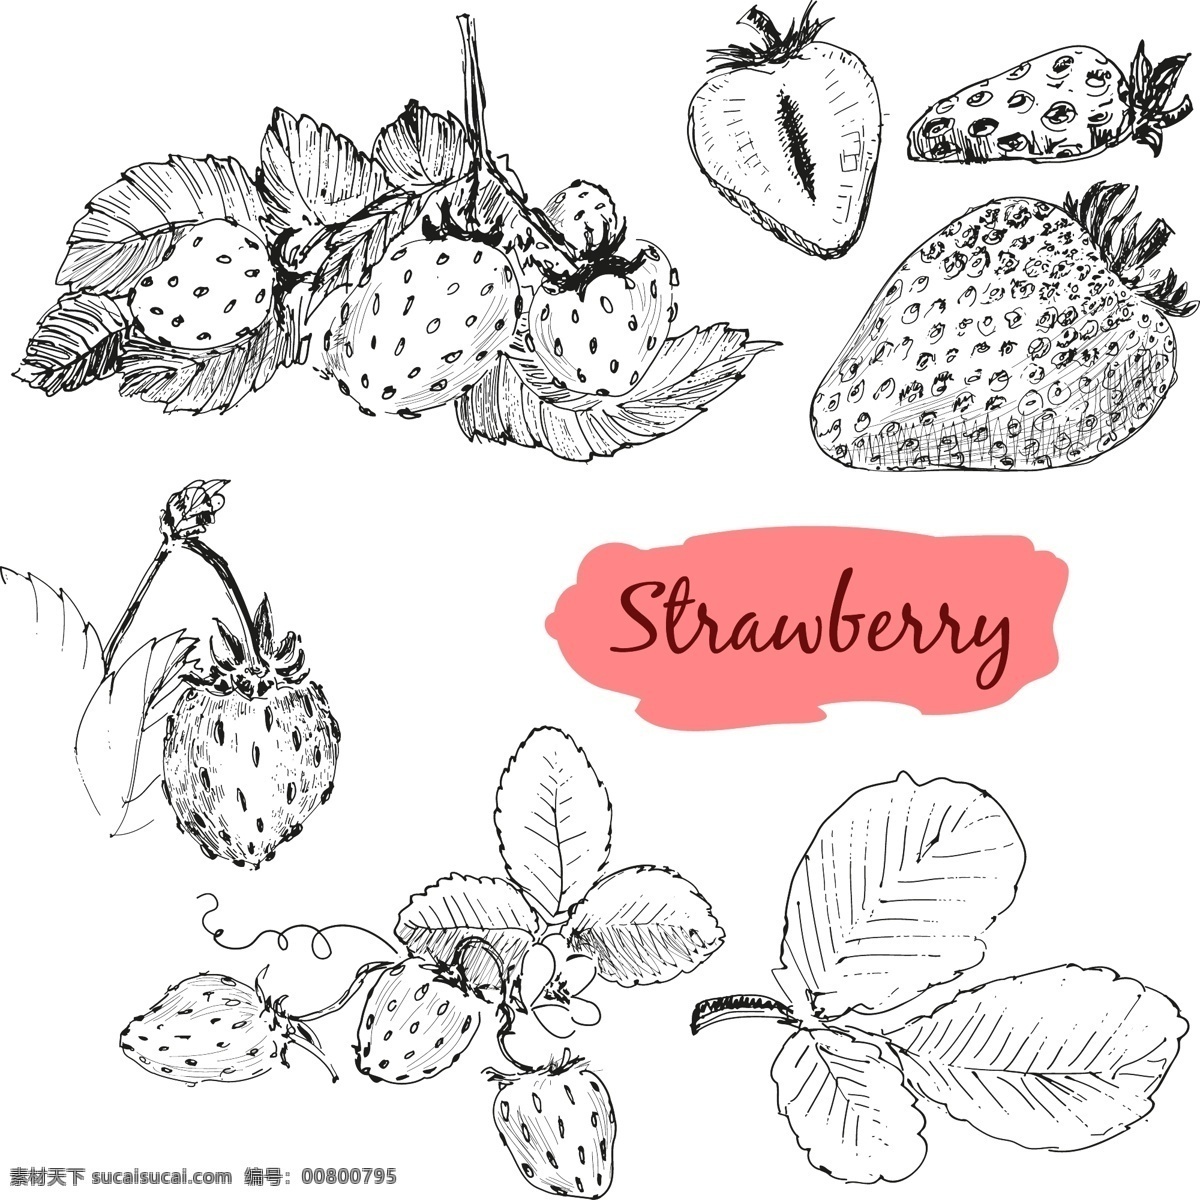 黑白手绘草莓 黑白 植物 水果 手绘 草莓 叶子